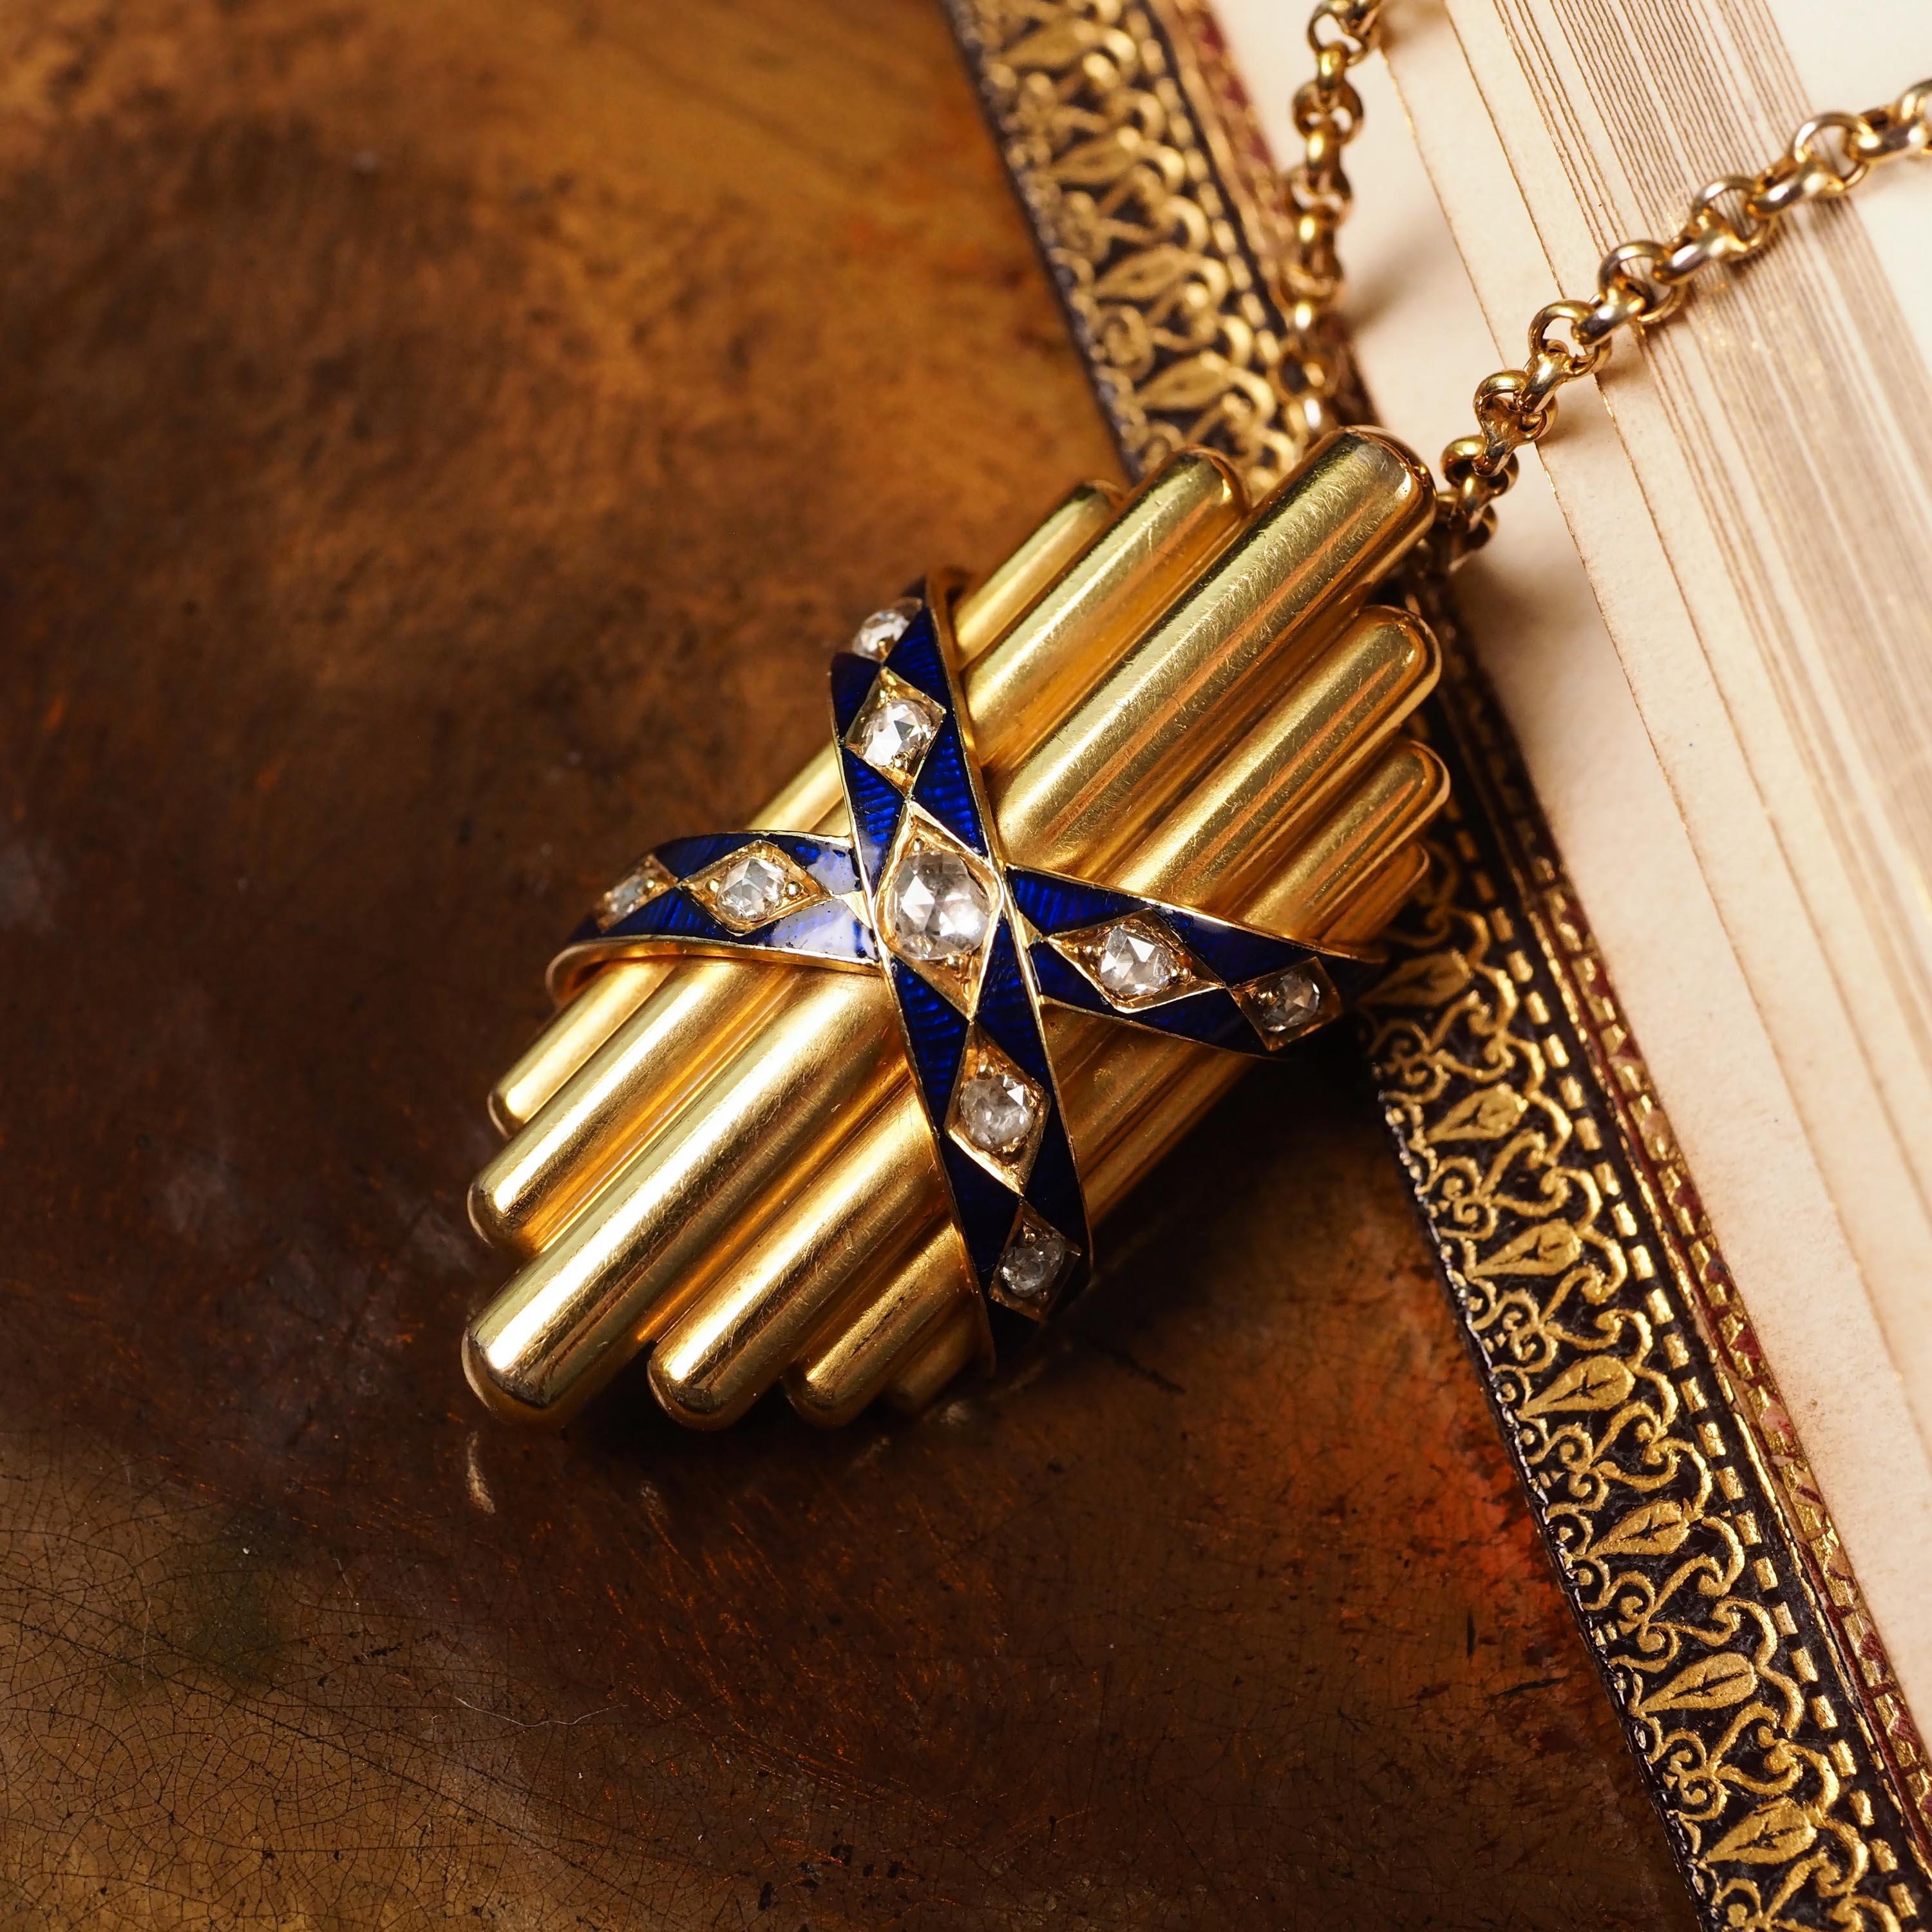 Antique 18K Gold Diamond Rose Cut Pendant Necklace with Blue Enamel - c.1880 For Sale 5